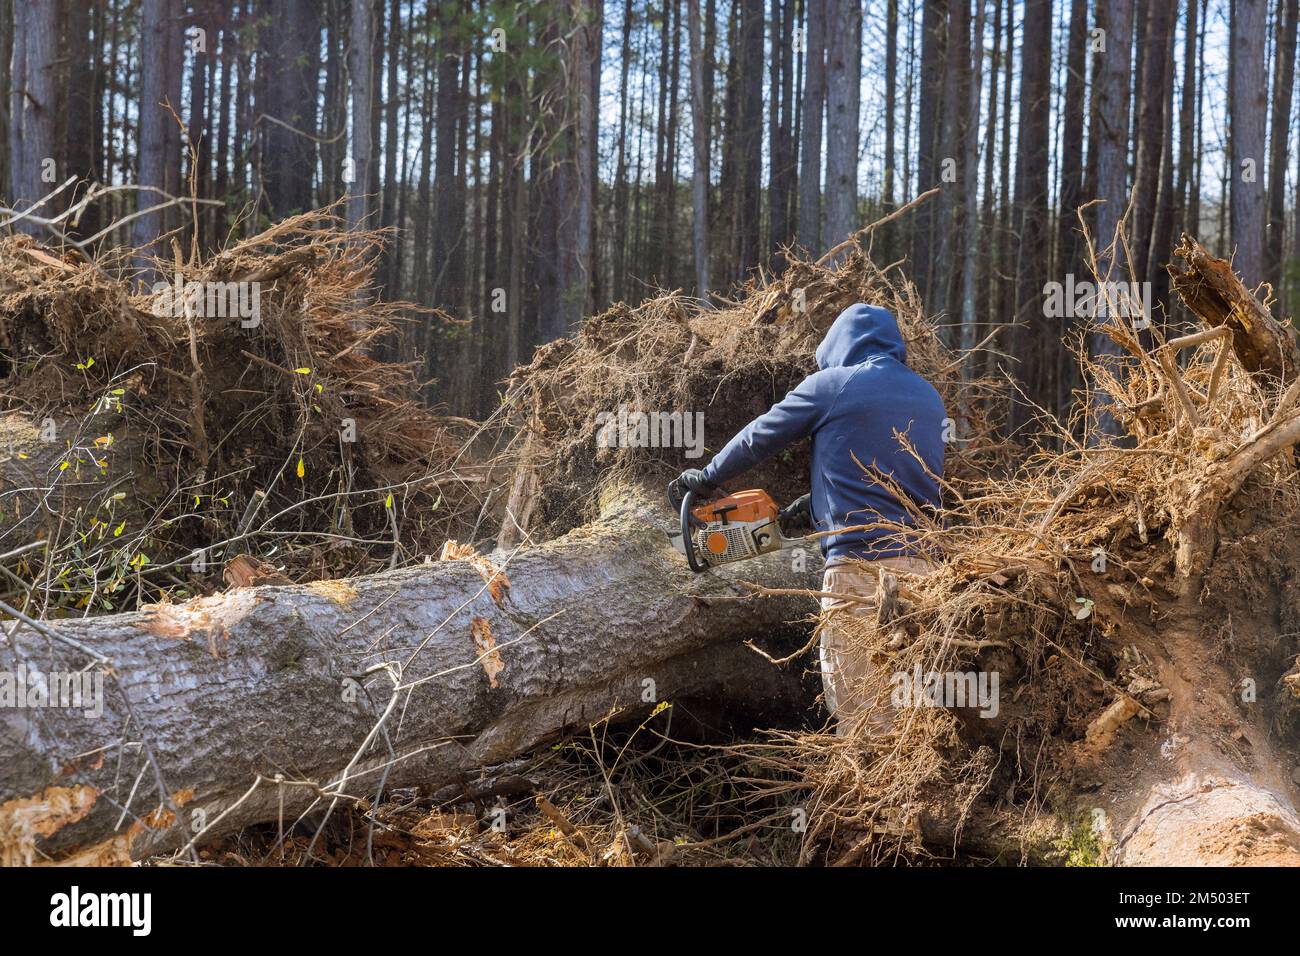 Das Fällen von Bäumen mit einer Kettensäge ist eine verheerende ökologische Katastrophe, da der Arbeiter den Wald zerstört. Stockfoto